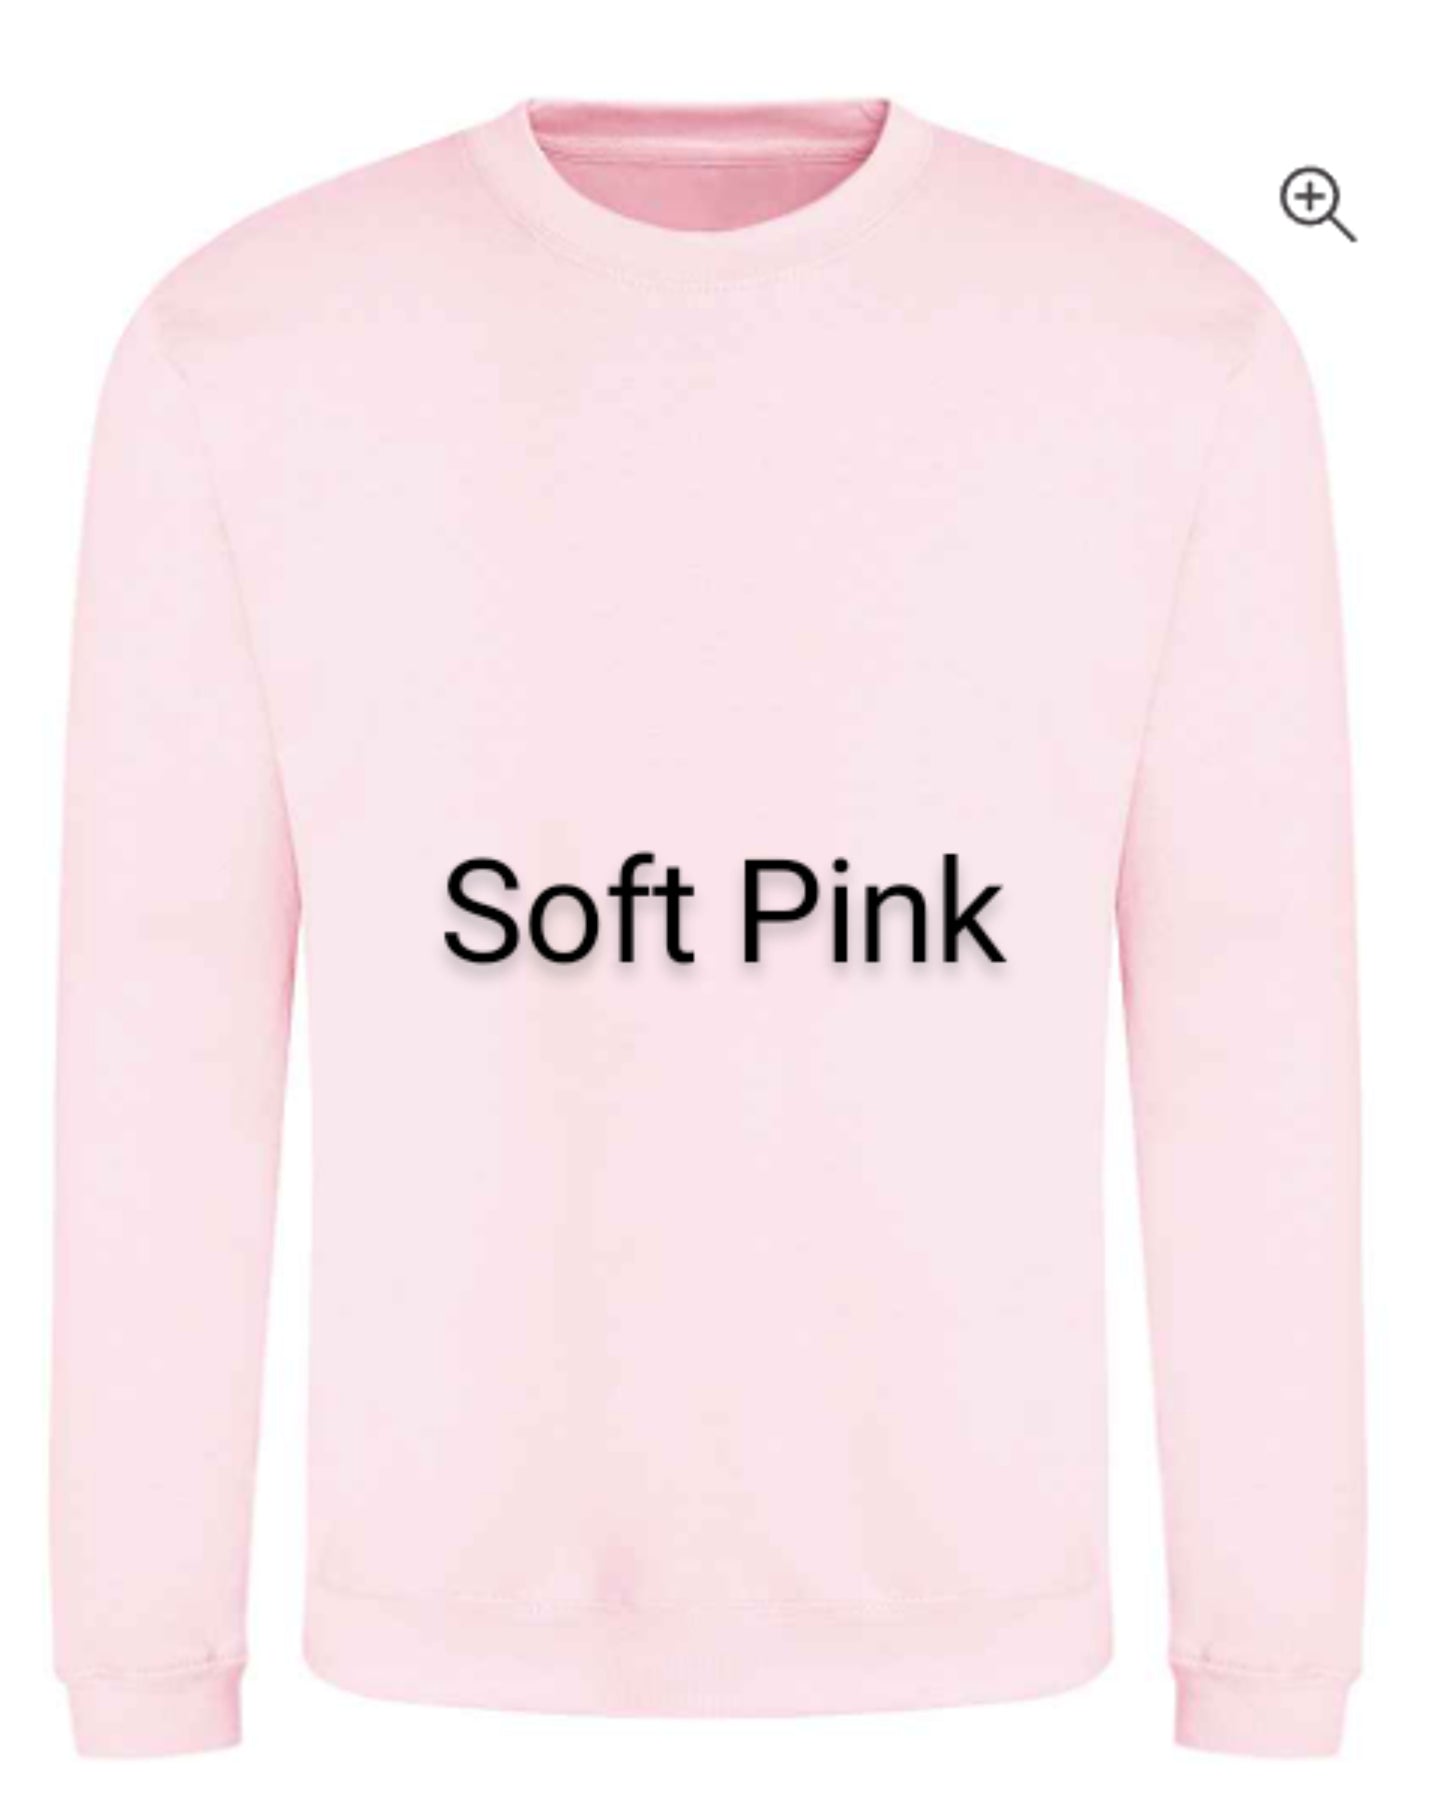 Flamingo Embroidered Unisex Adults Sweatshirt With Option of Additional Novelty "Flaminingo" Wording